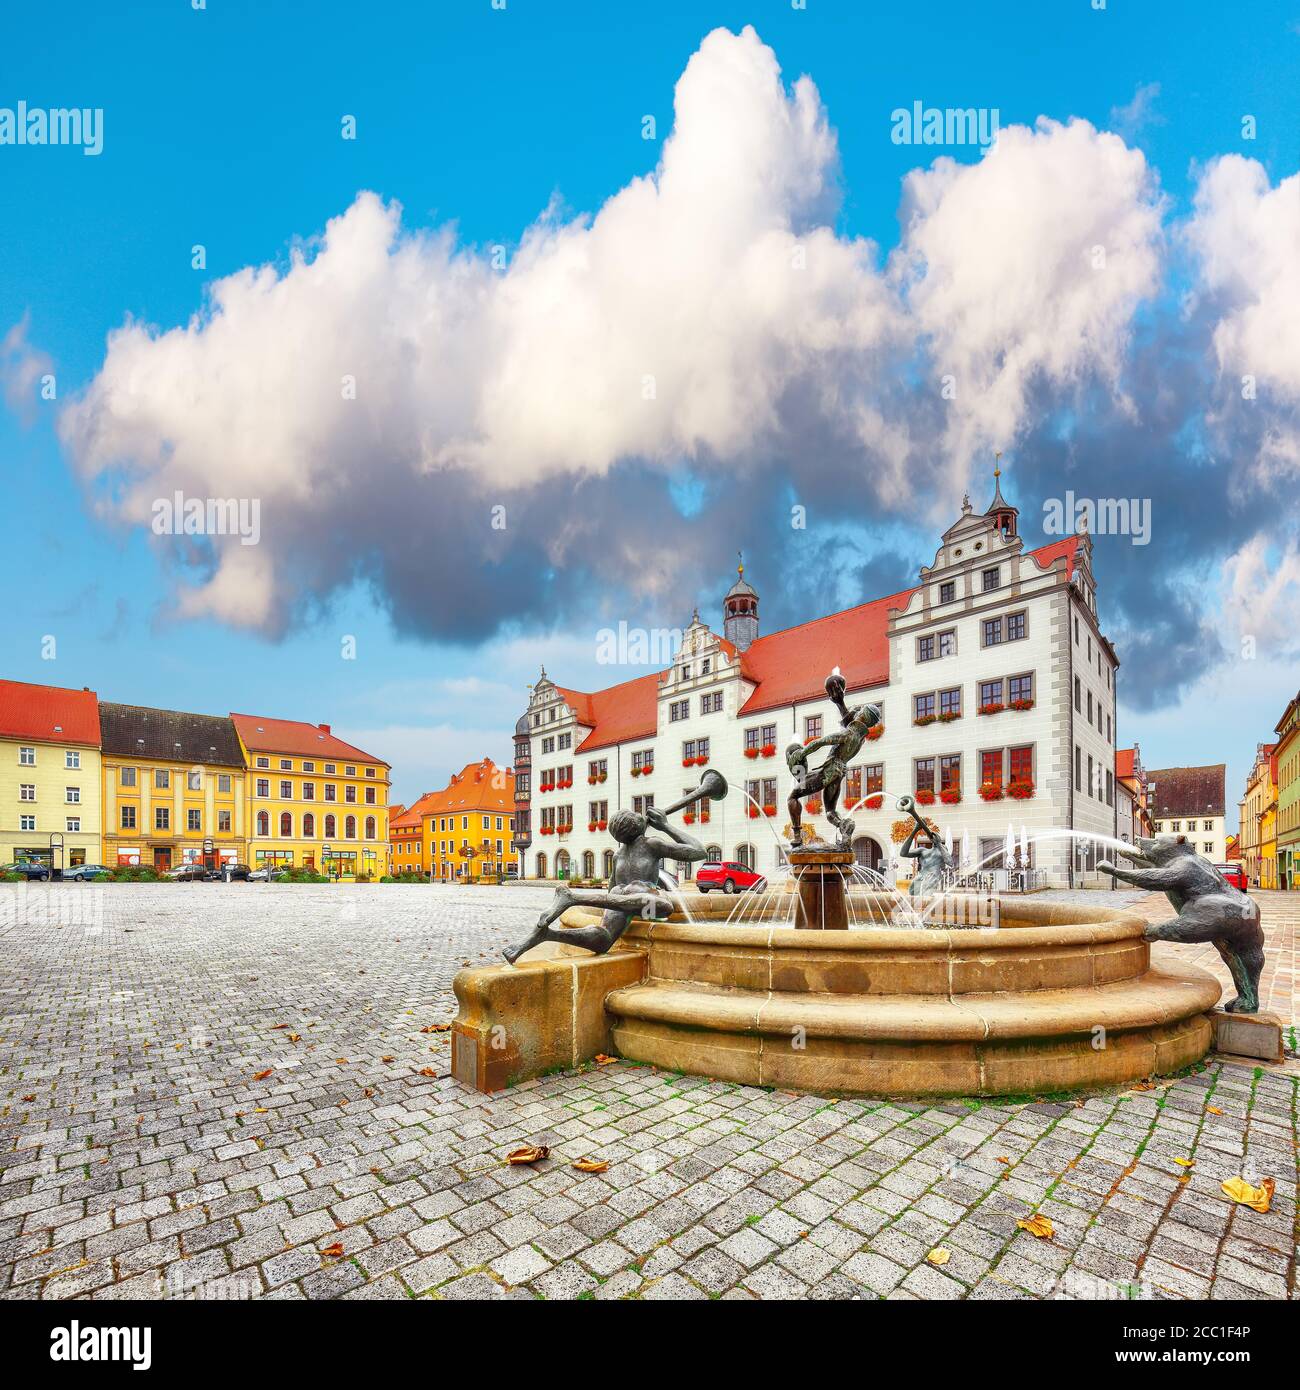 Herrliche Herbstansicht des Torgau Rathauses und des berühmten Brunnens. Malerischer Blick auf Torgau Stadt am Elbufer. Lage: Torgau, nordwestlich S Stockfoto